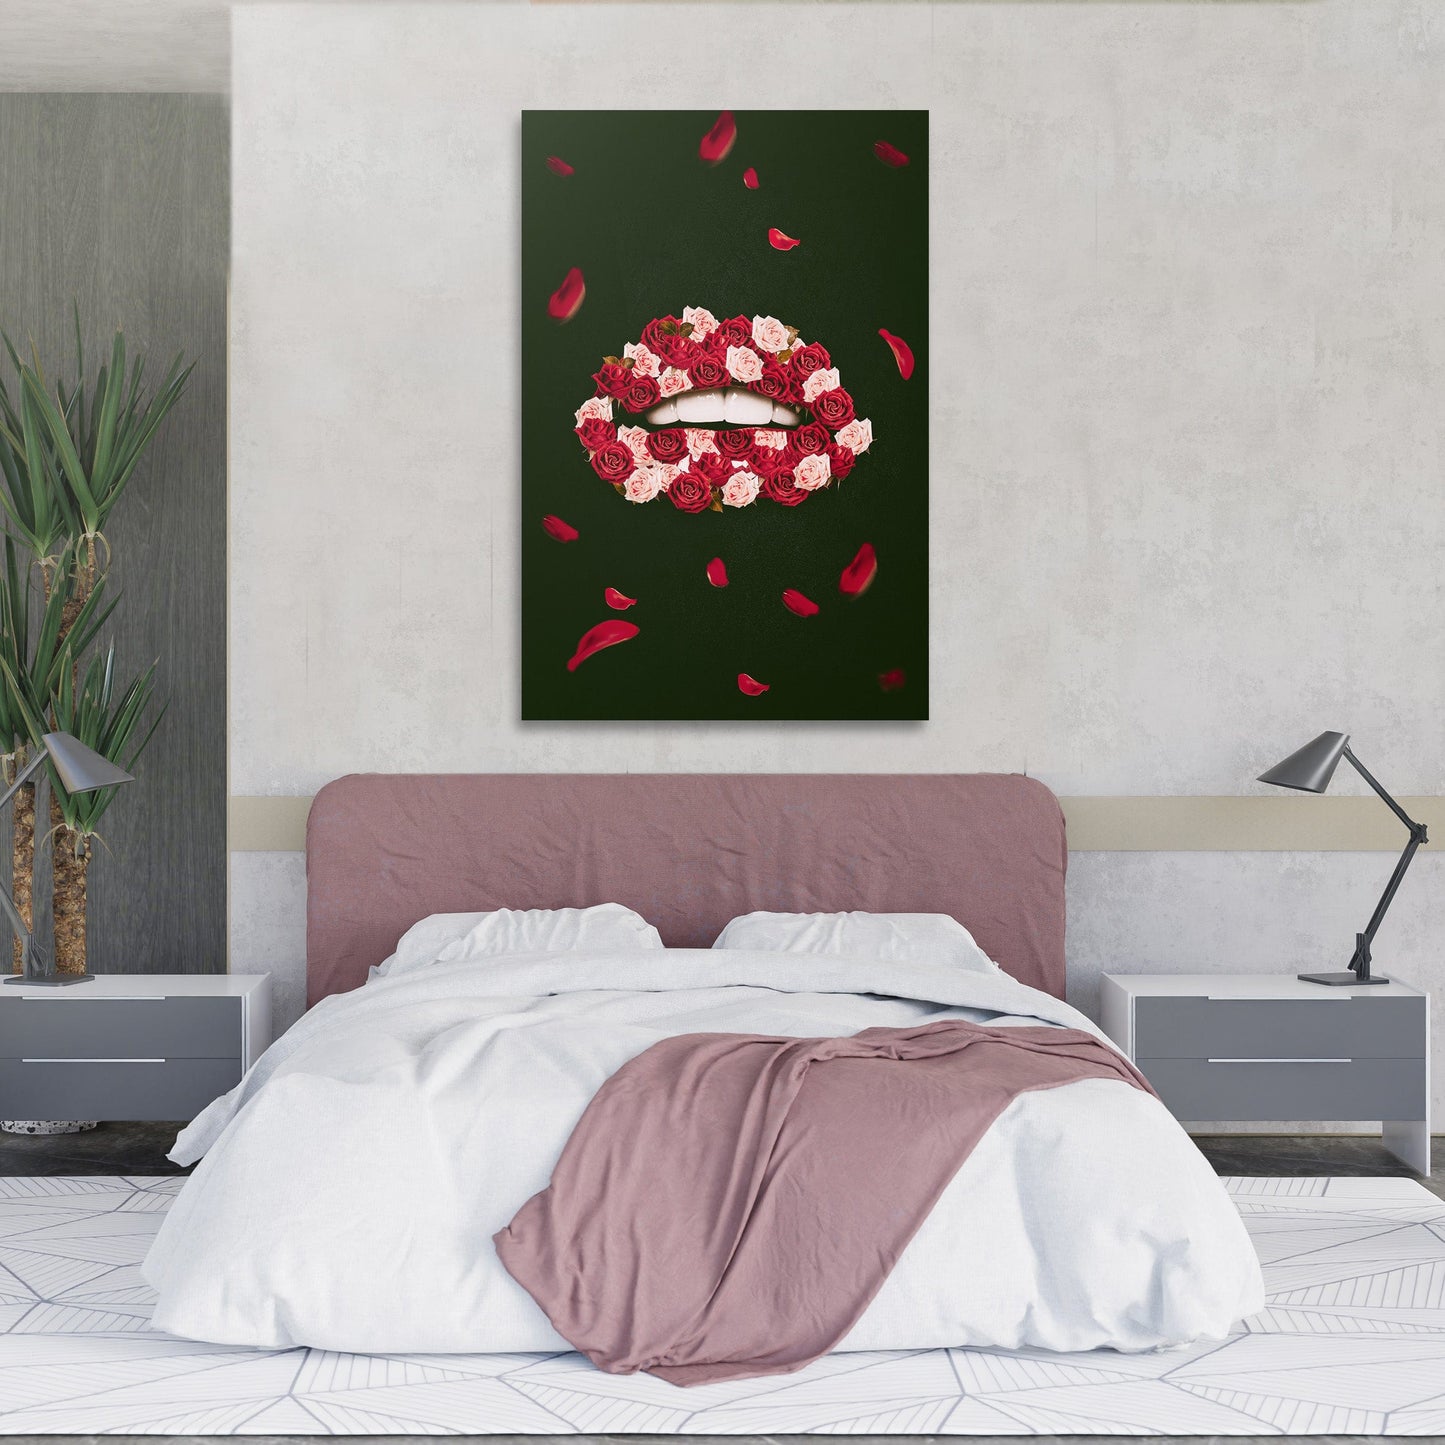 Rose Lips Wall Art | Inspirational Wall Art Motivational Wall Art Quotes Office Art | ImpaktMaker Exclusive Canvas Art Portrait